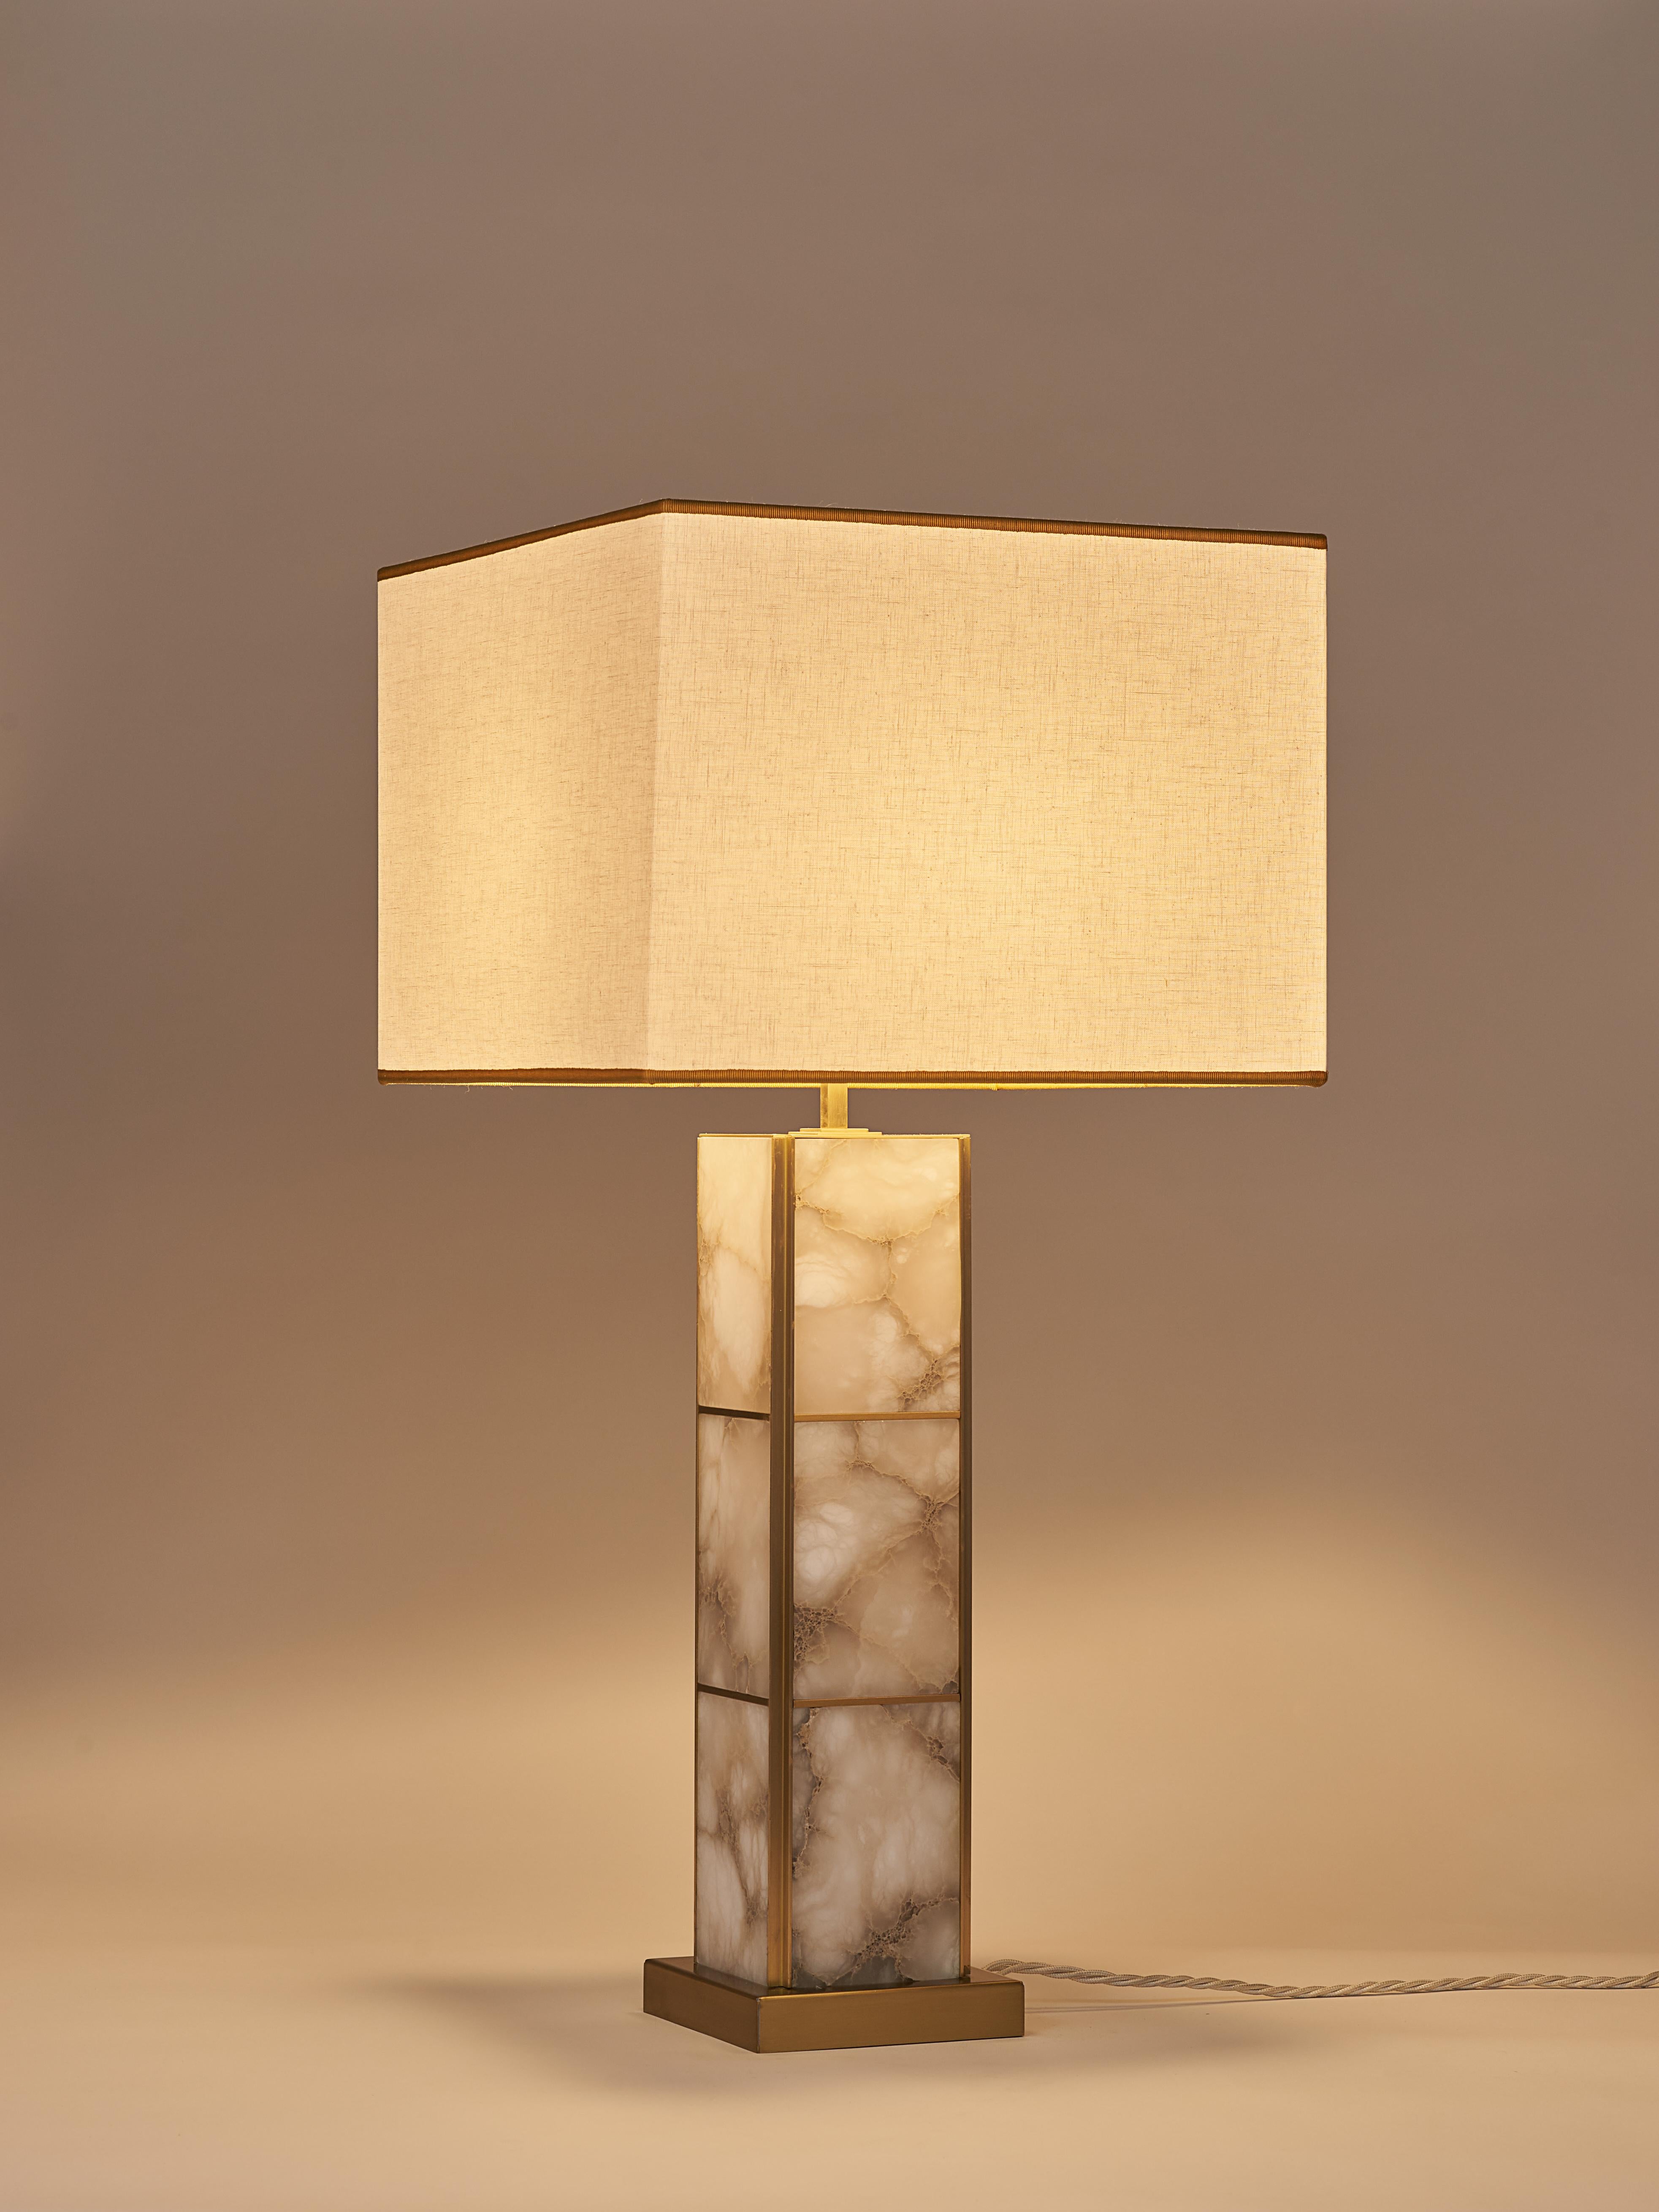 La lampe de table Mole se caractérise par une structure linéaire monolithique en laiton et albâtre veiné qui lui confère une esthétique moderne et intemporelle, parfaite pour différents styles d'intérieur. Le laiton satiné ajoute une touche de